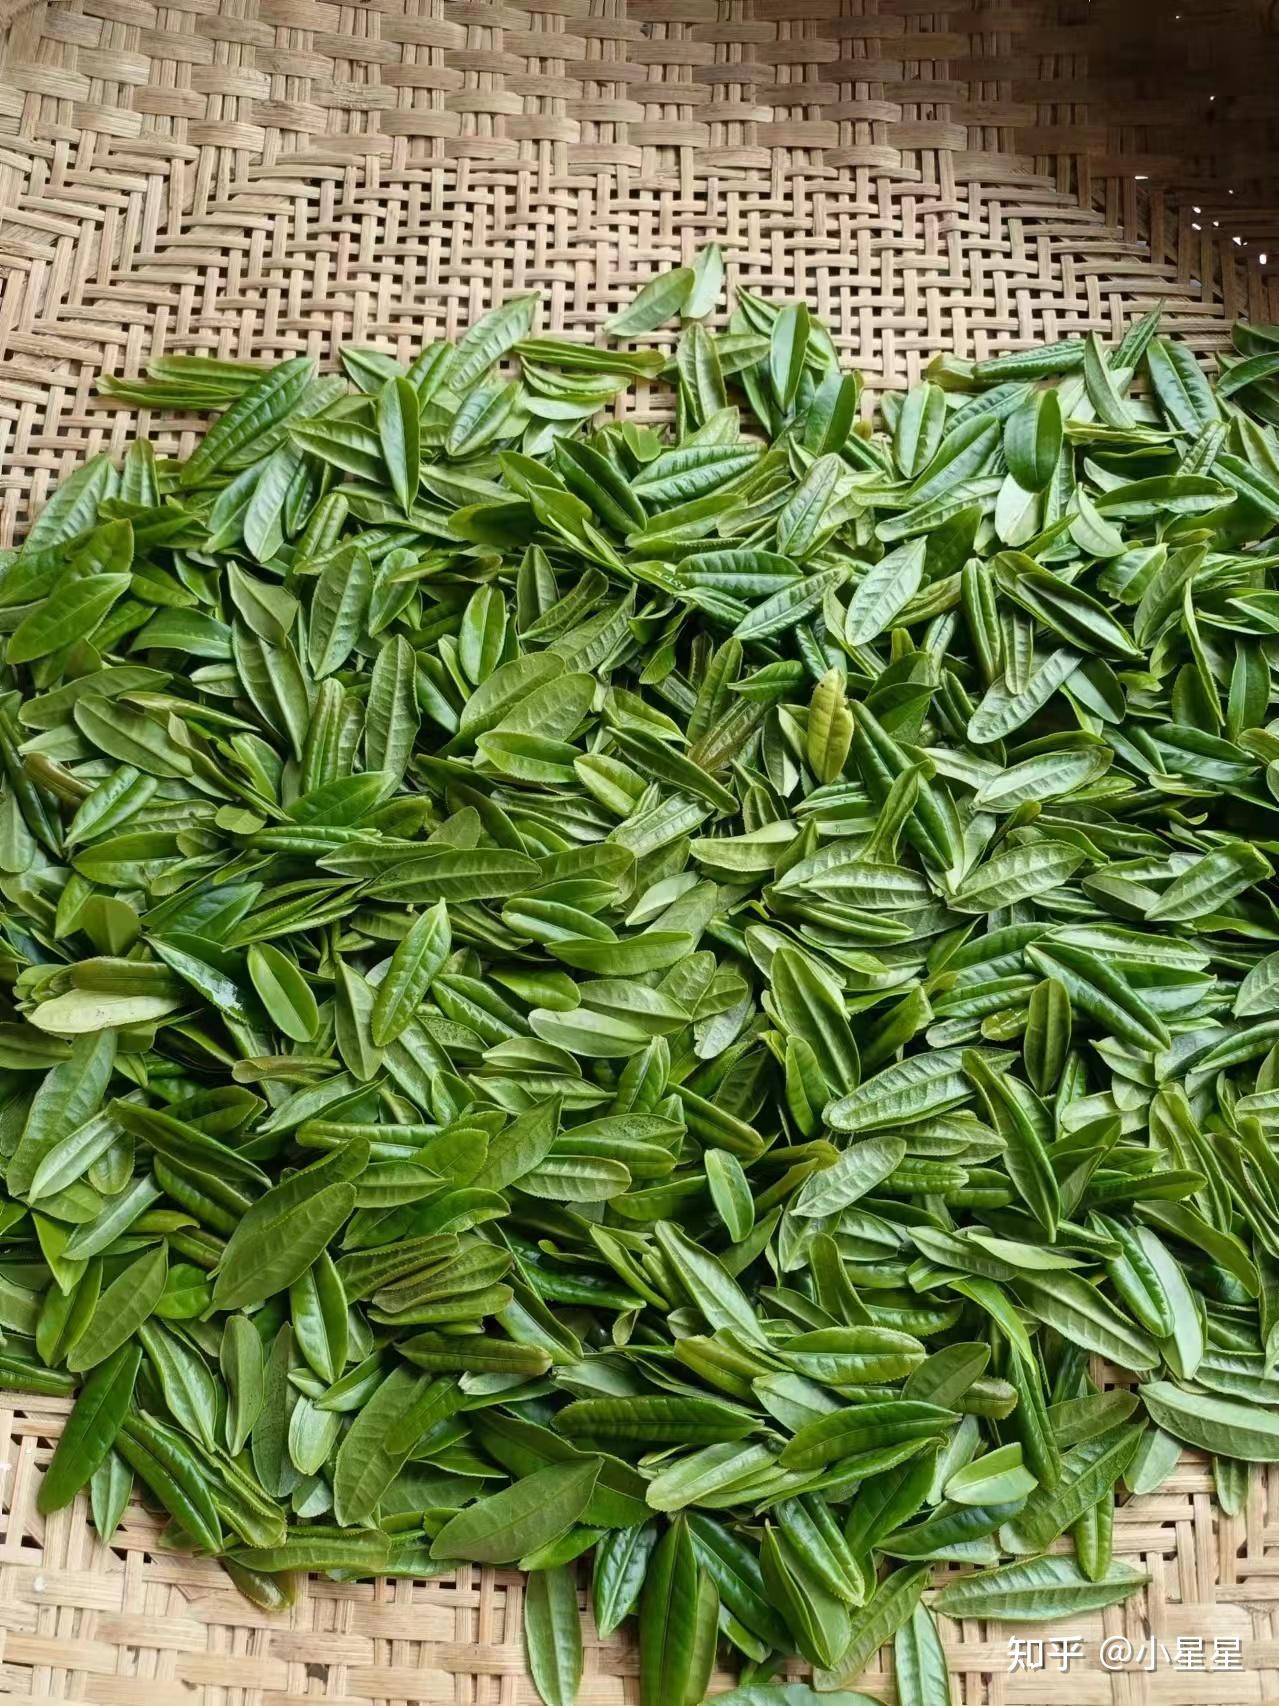 安徽名茶系列六安瓜片茶韵悠长 - 名茶瓜片